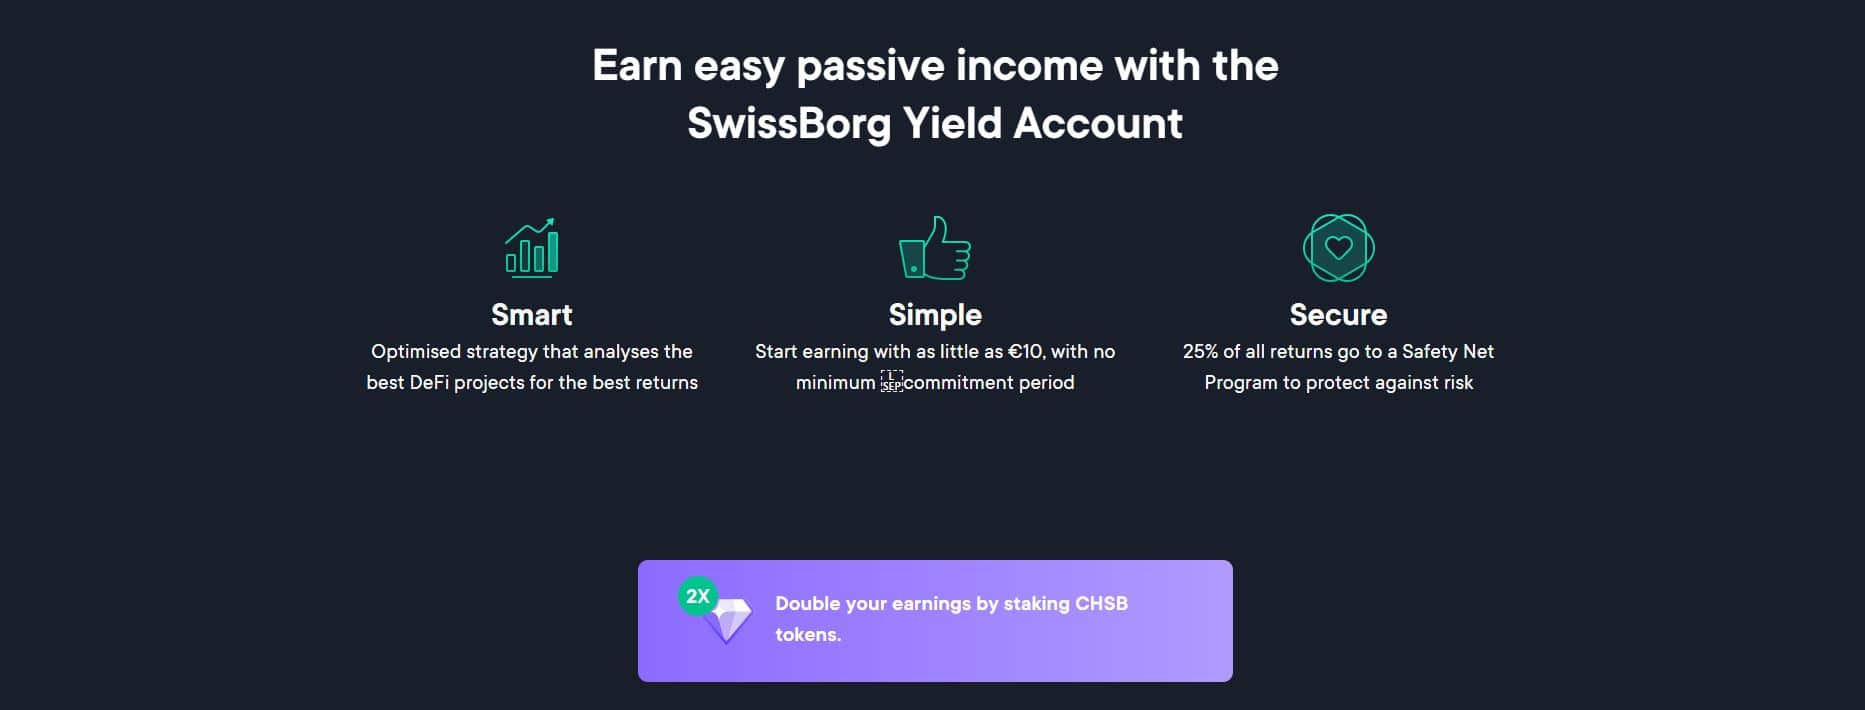 Les valeurs du nouveau produit de Swissborg, le Smart Yield Account